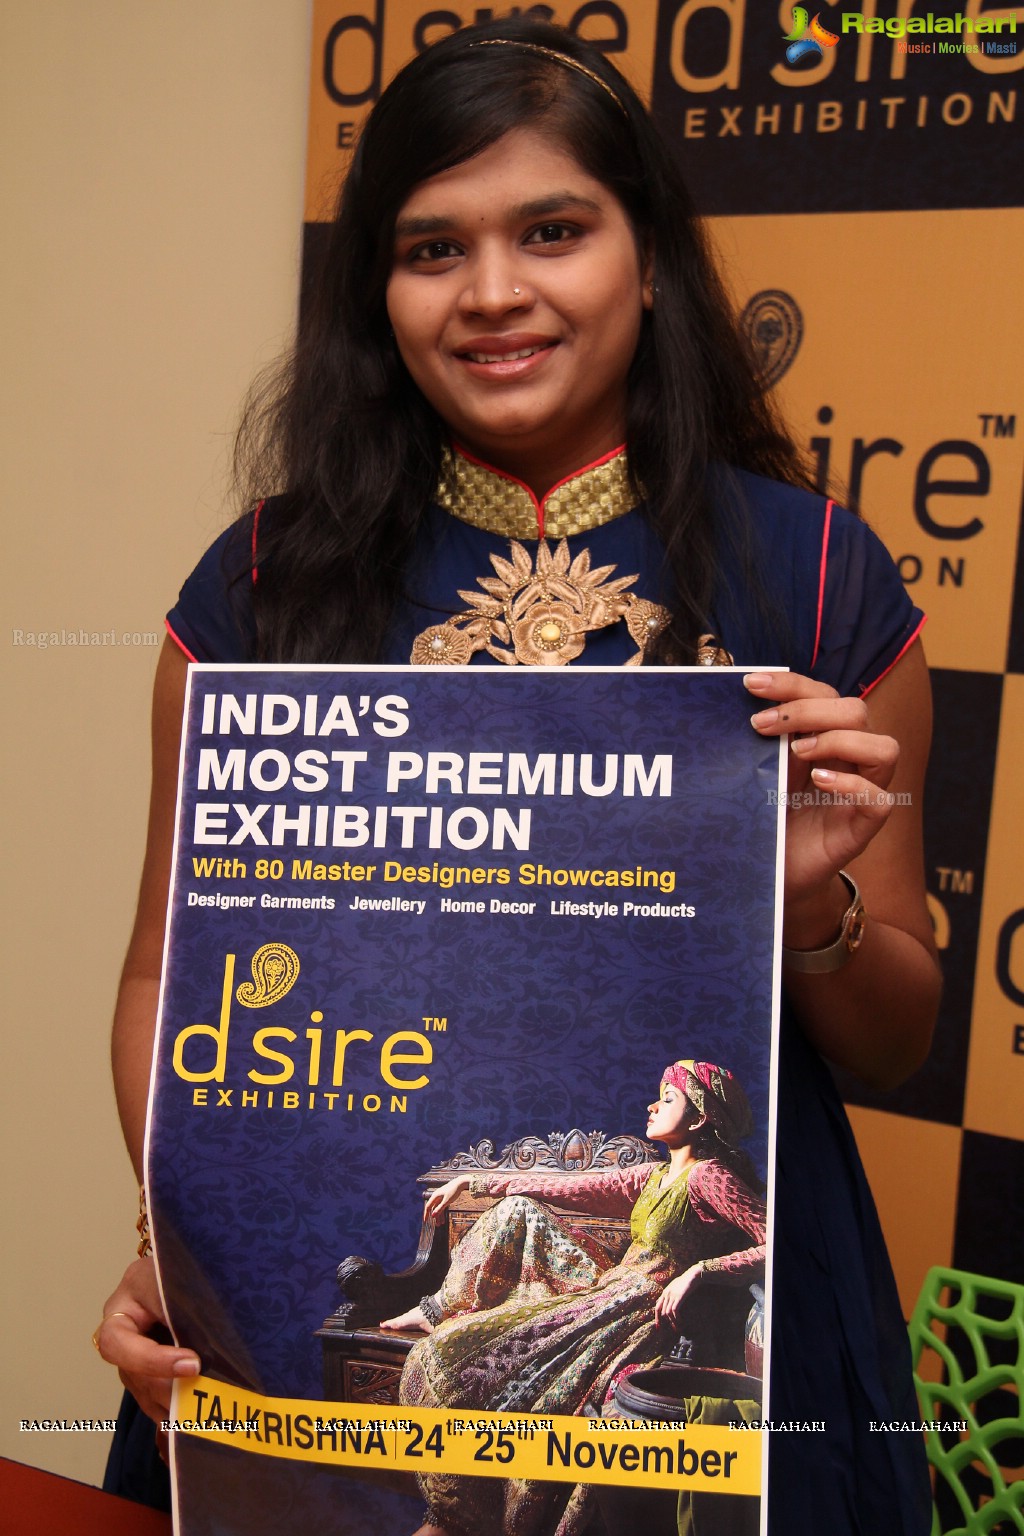 D'sire Exhibition n Sale Curtain Raiser (Nov. 2015)